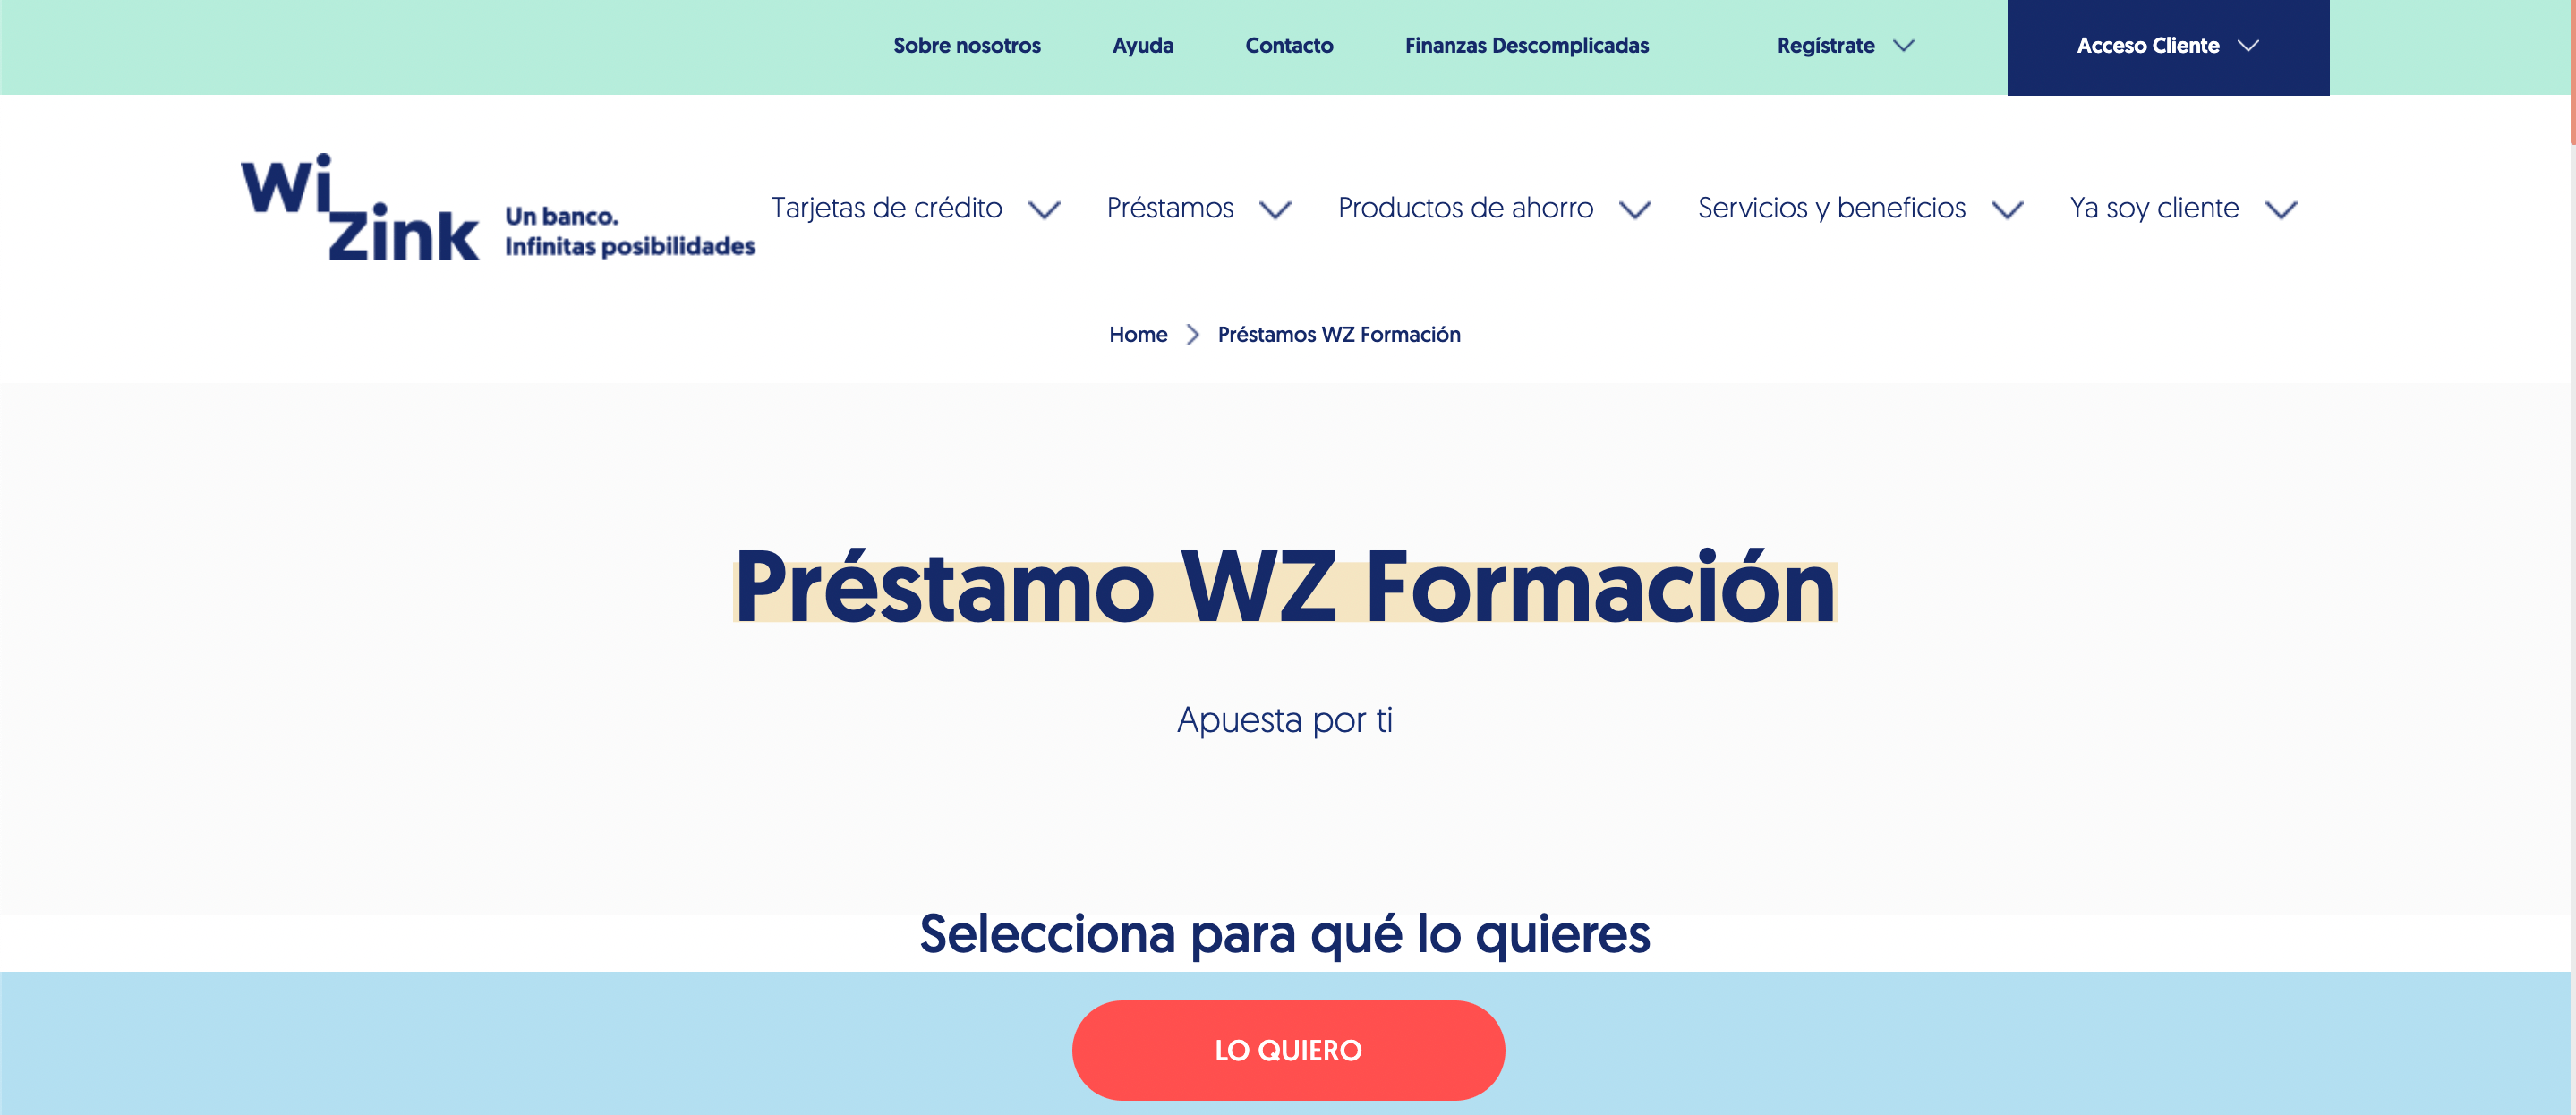 Wizink Préstamo WZ Formación experiencia y discusión